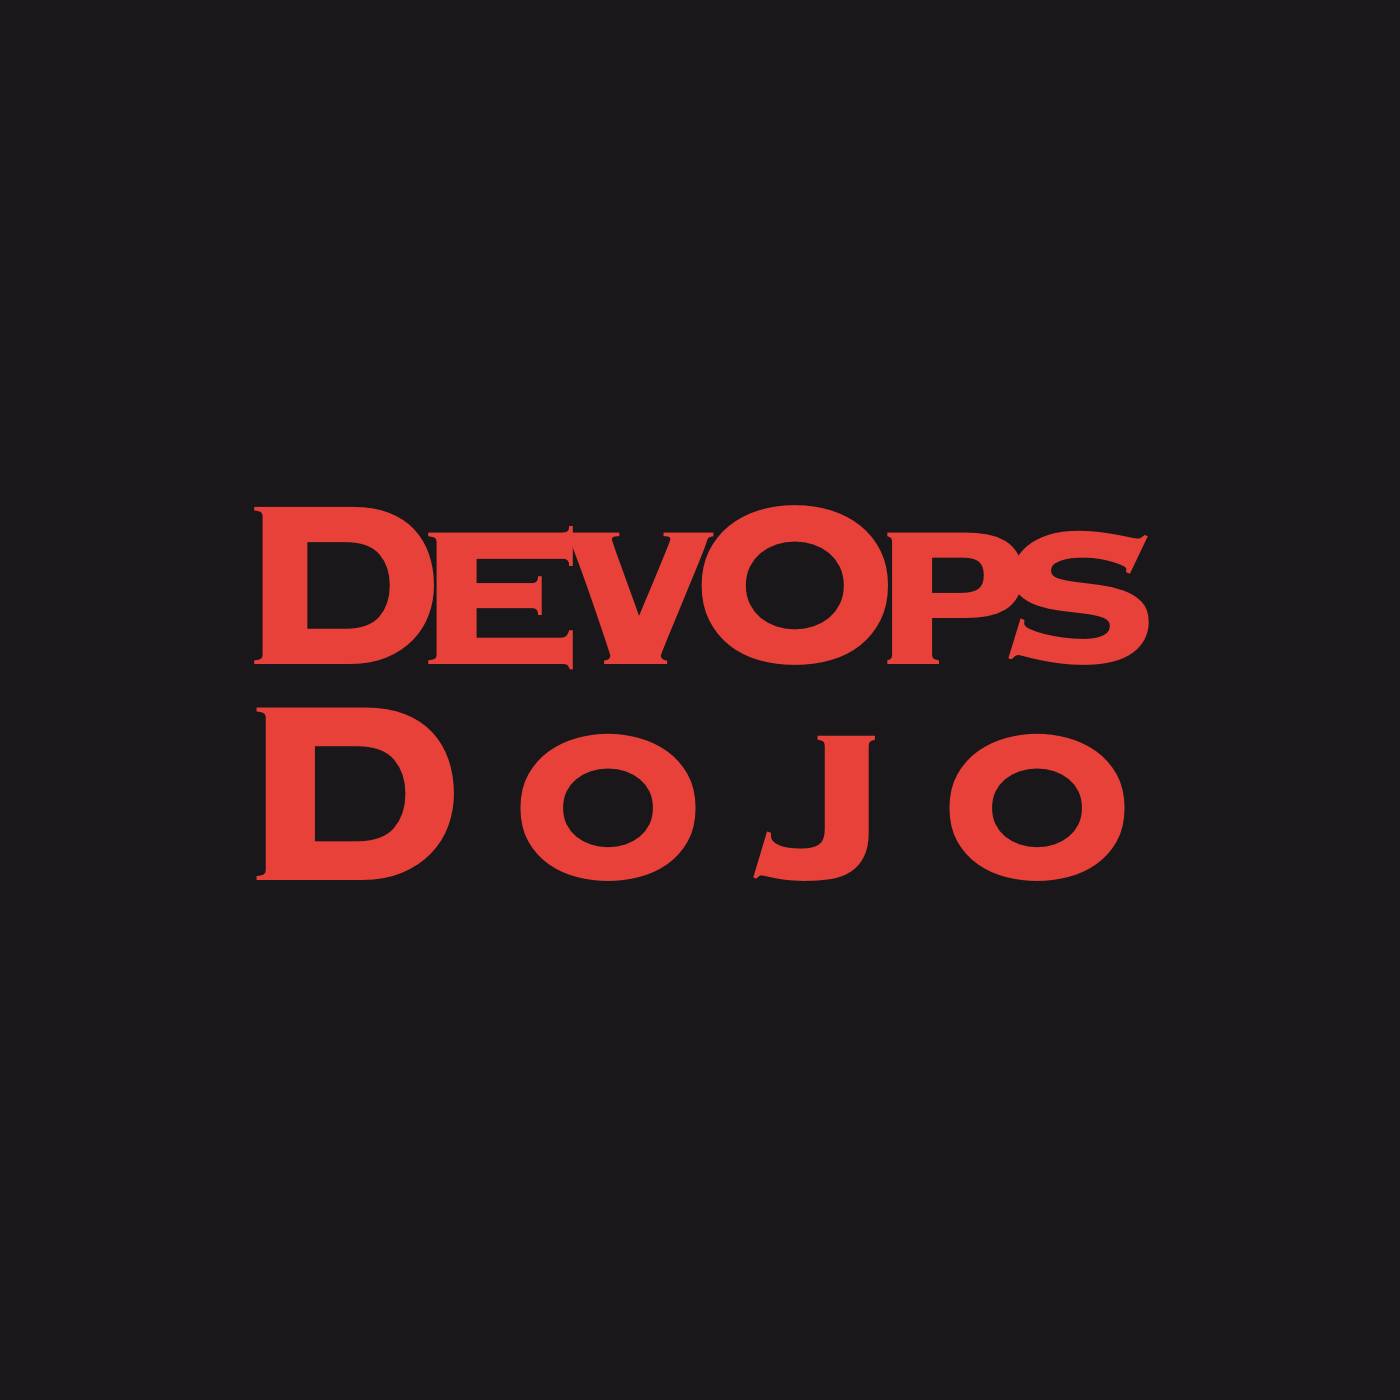 The DevOps Dojo